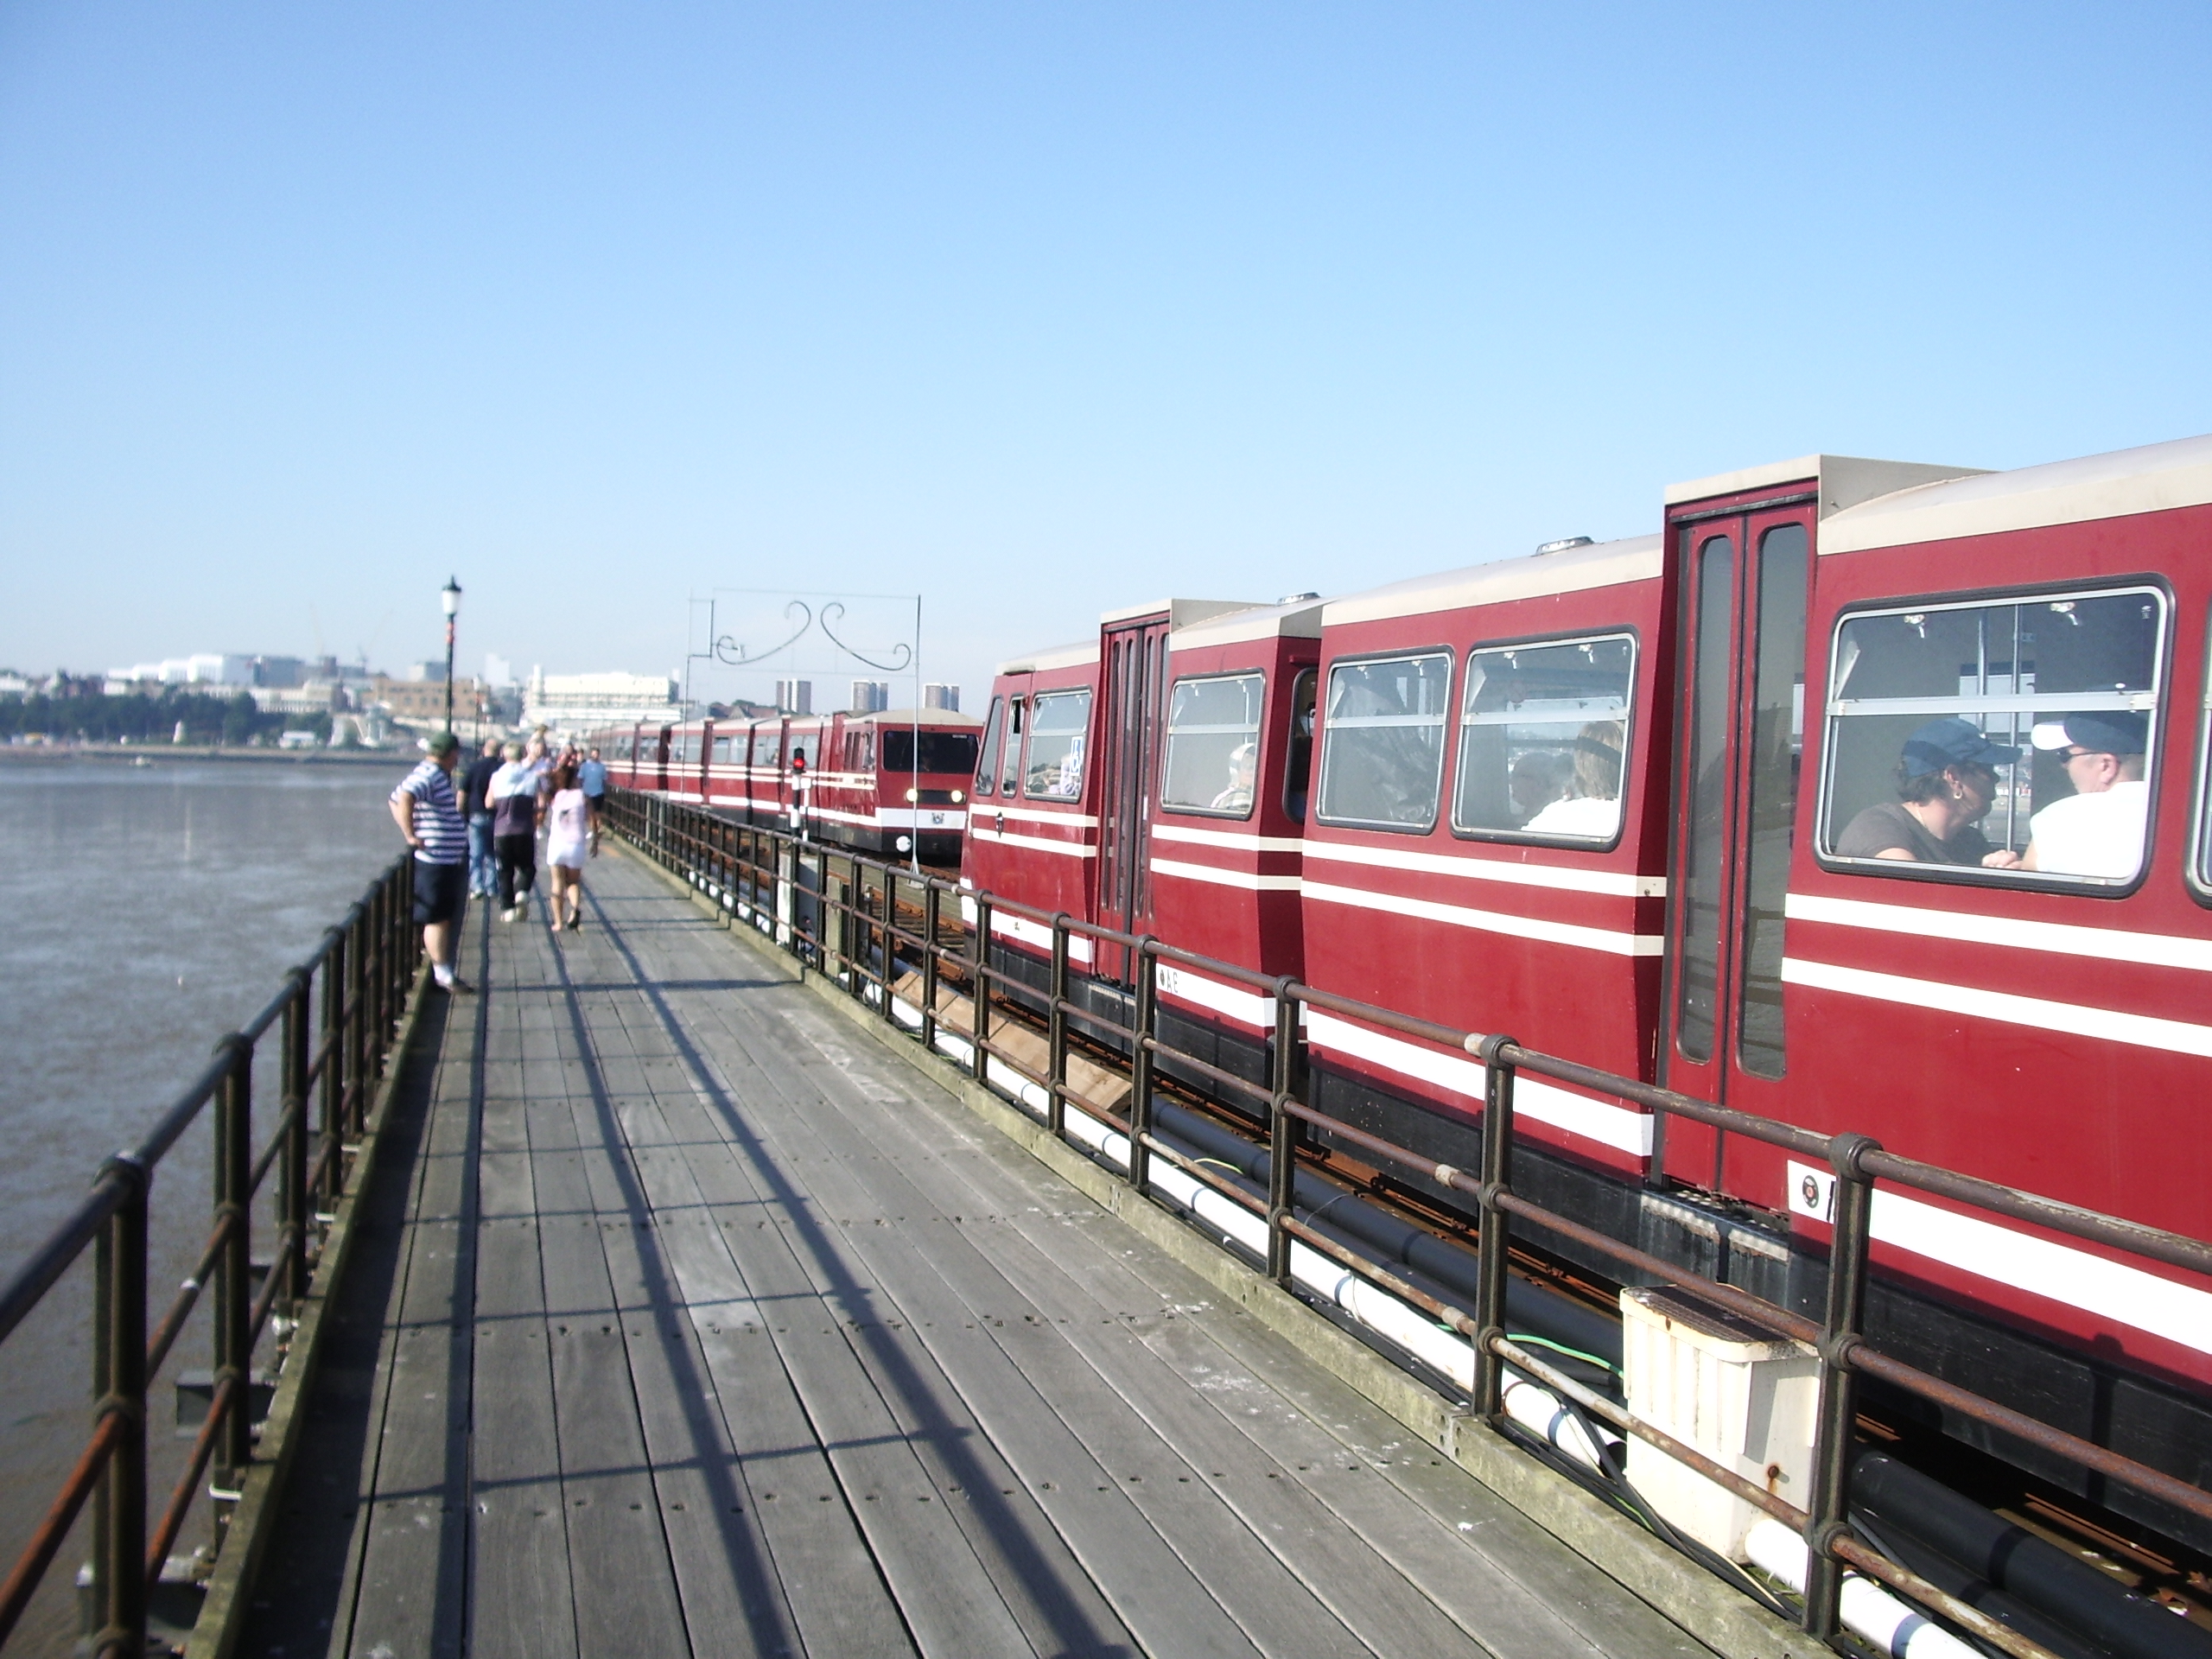 southend pier trains